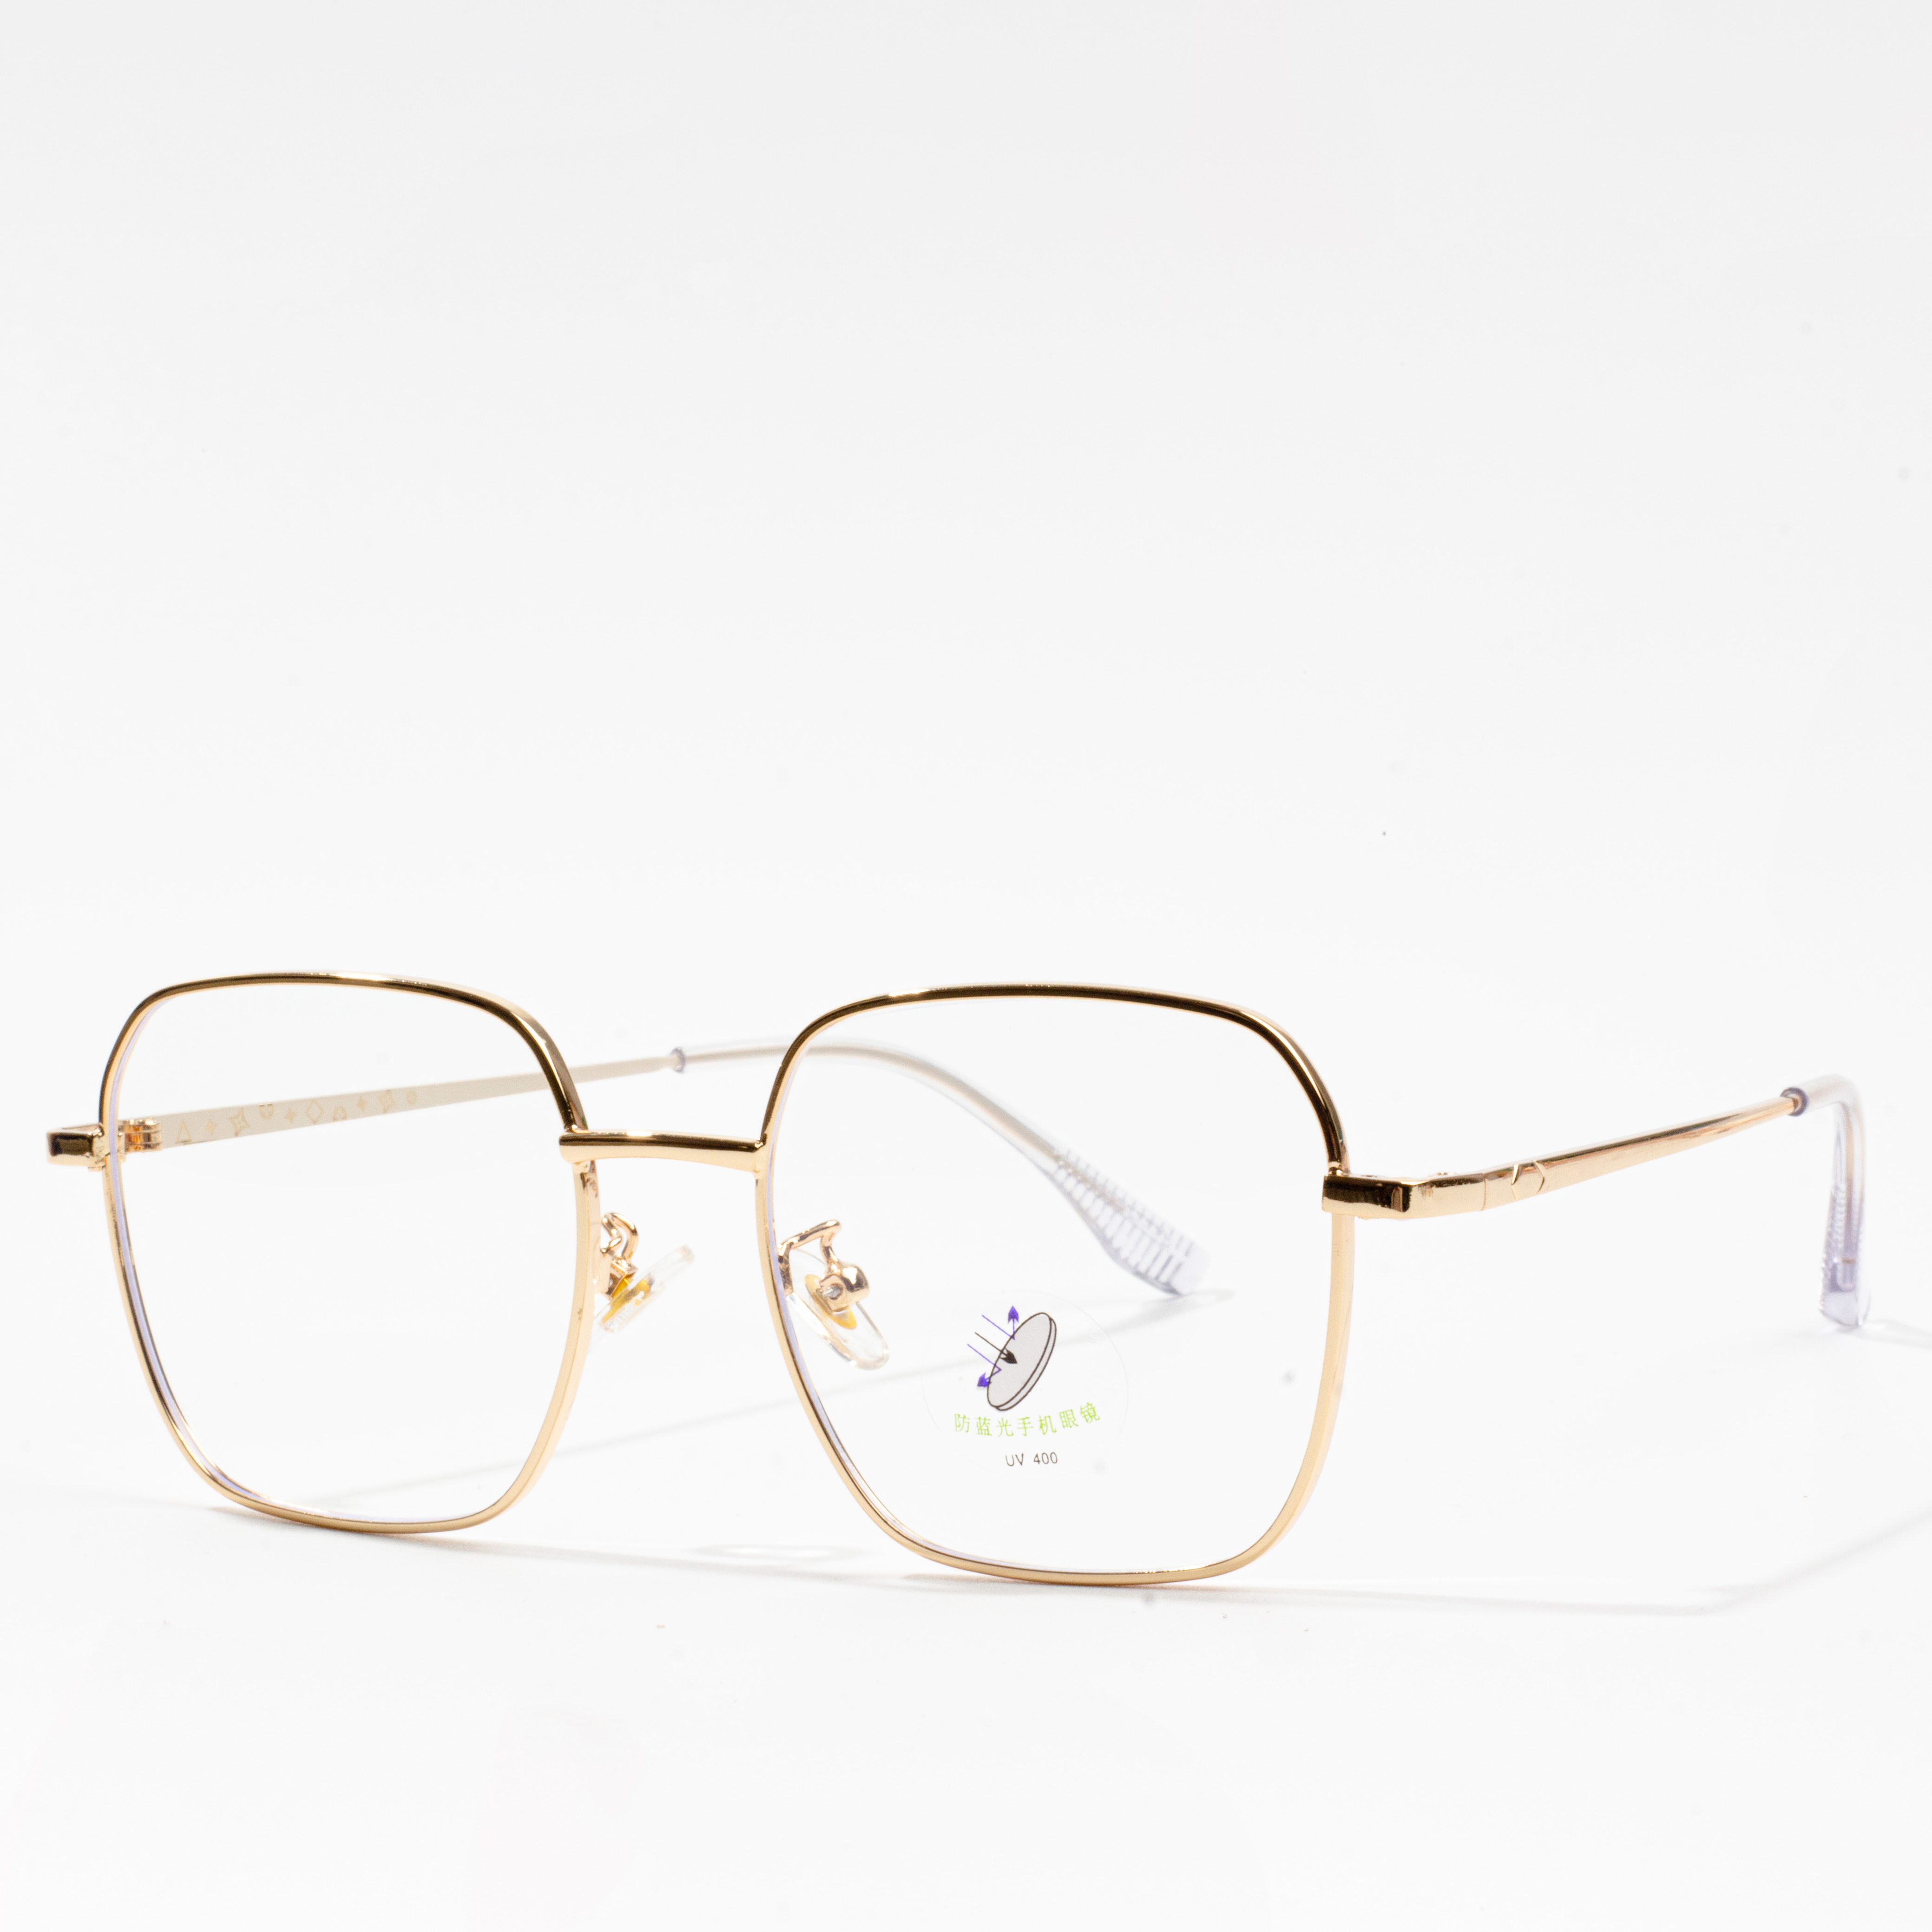 ûntwerpers bril frames